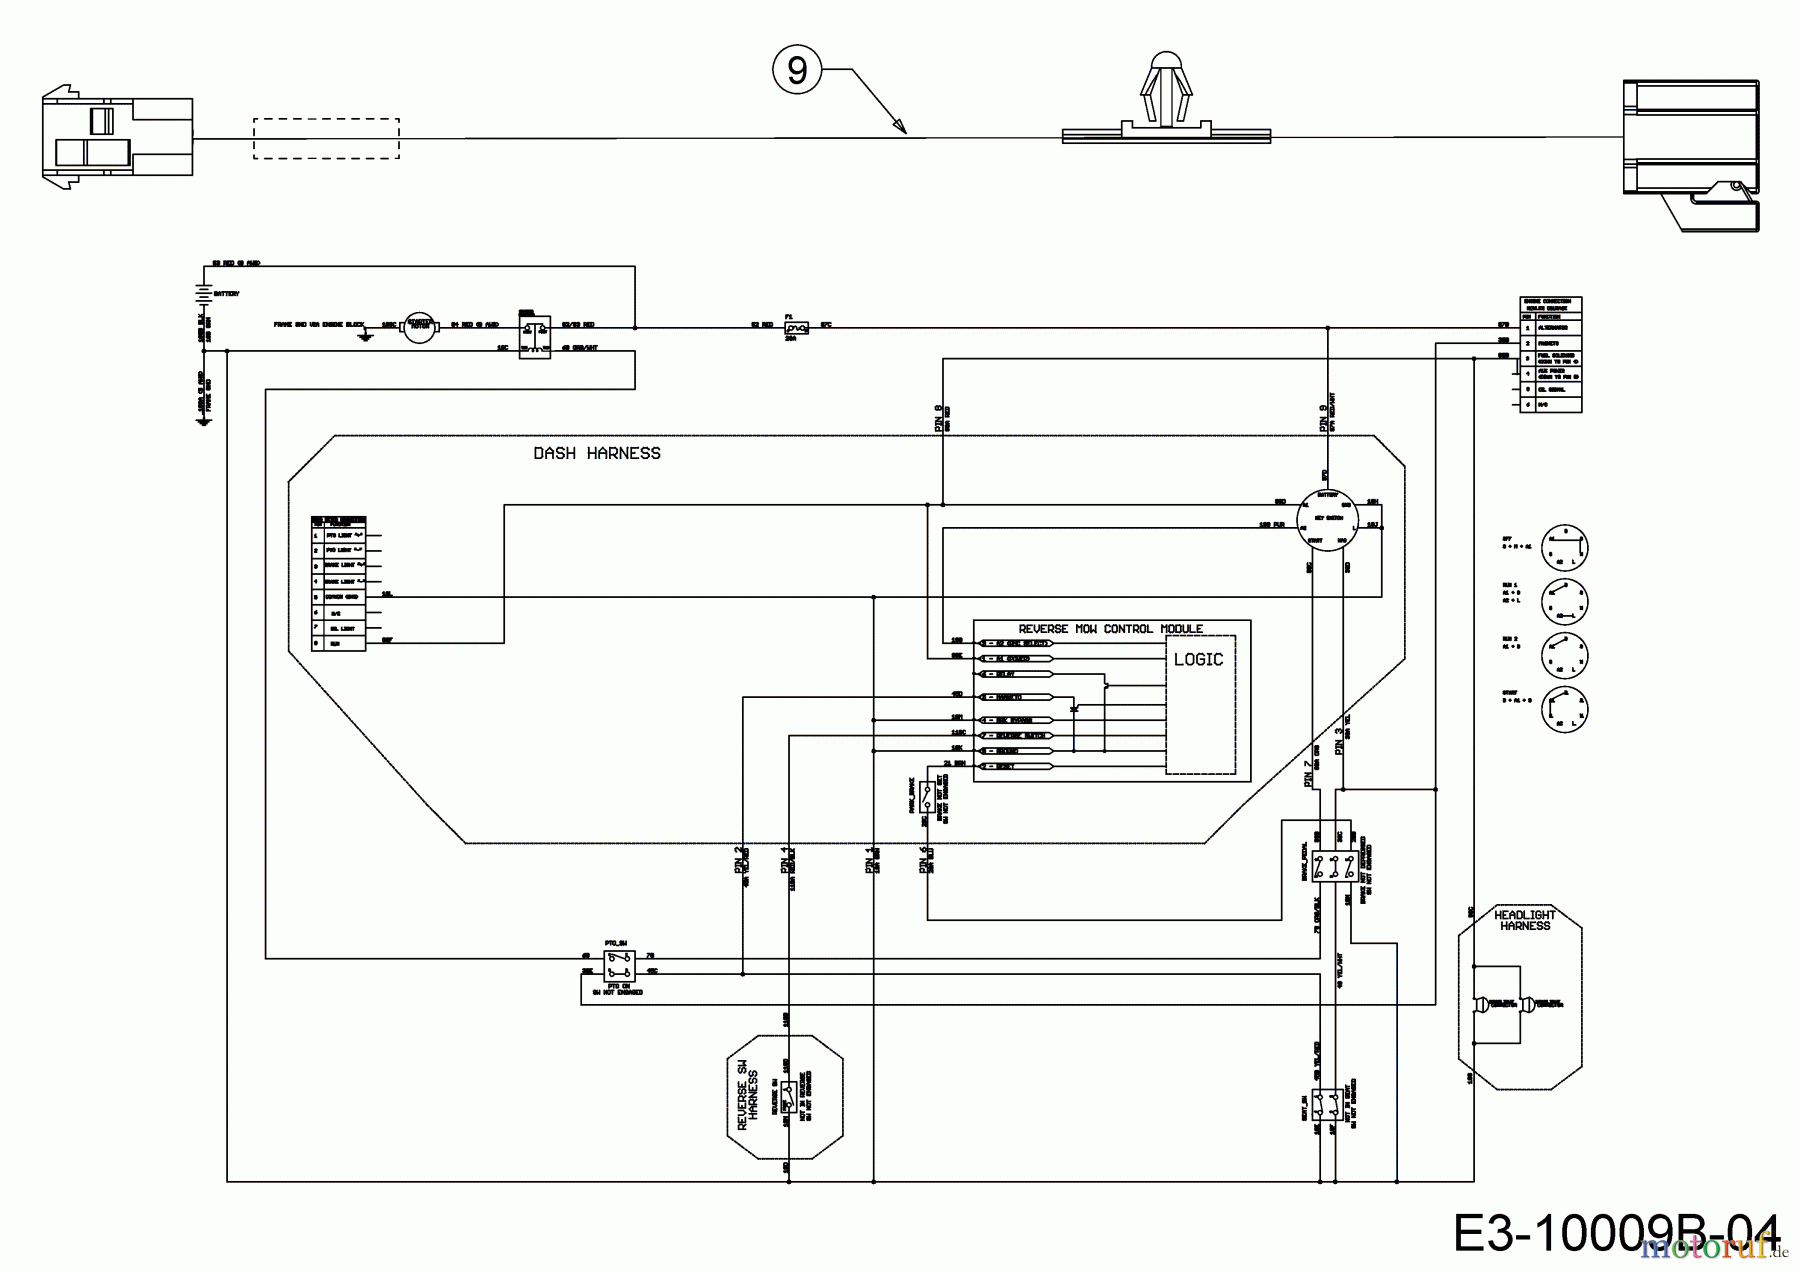  Cub Cadet Lawn tractors XT1 OS96 13A8A1CF603  (2018) Wiring diagram reverse